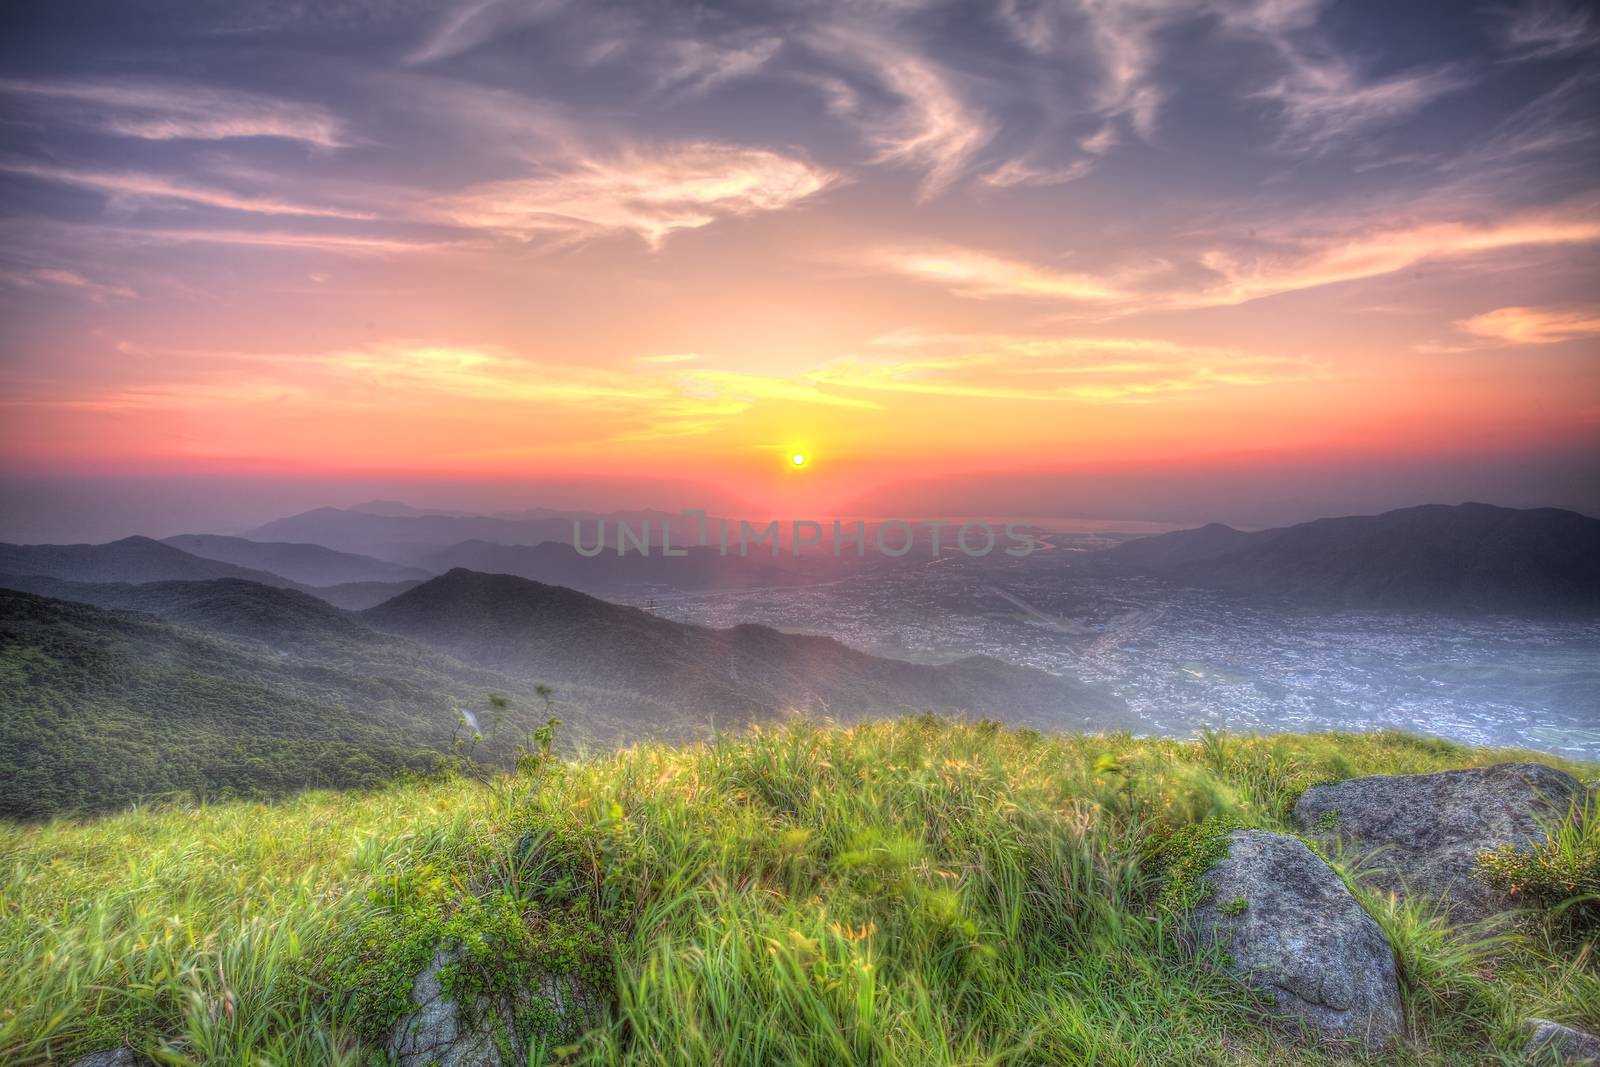 Sunset at Hong Kong at mountains, HDR image.